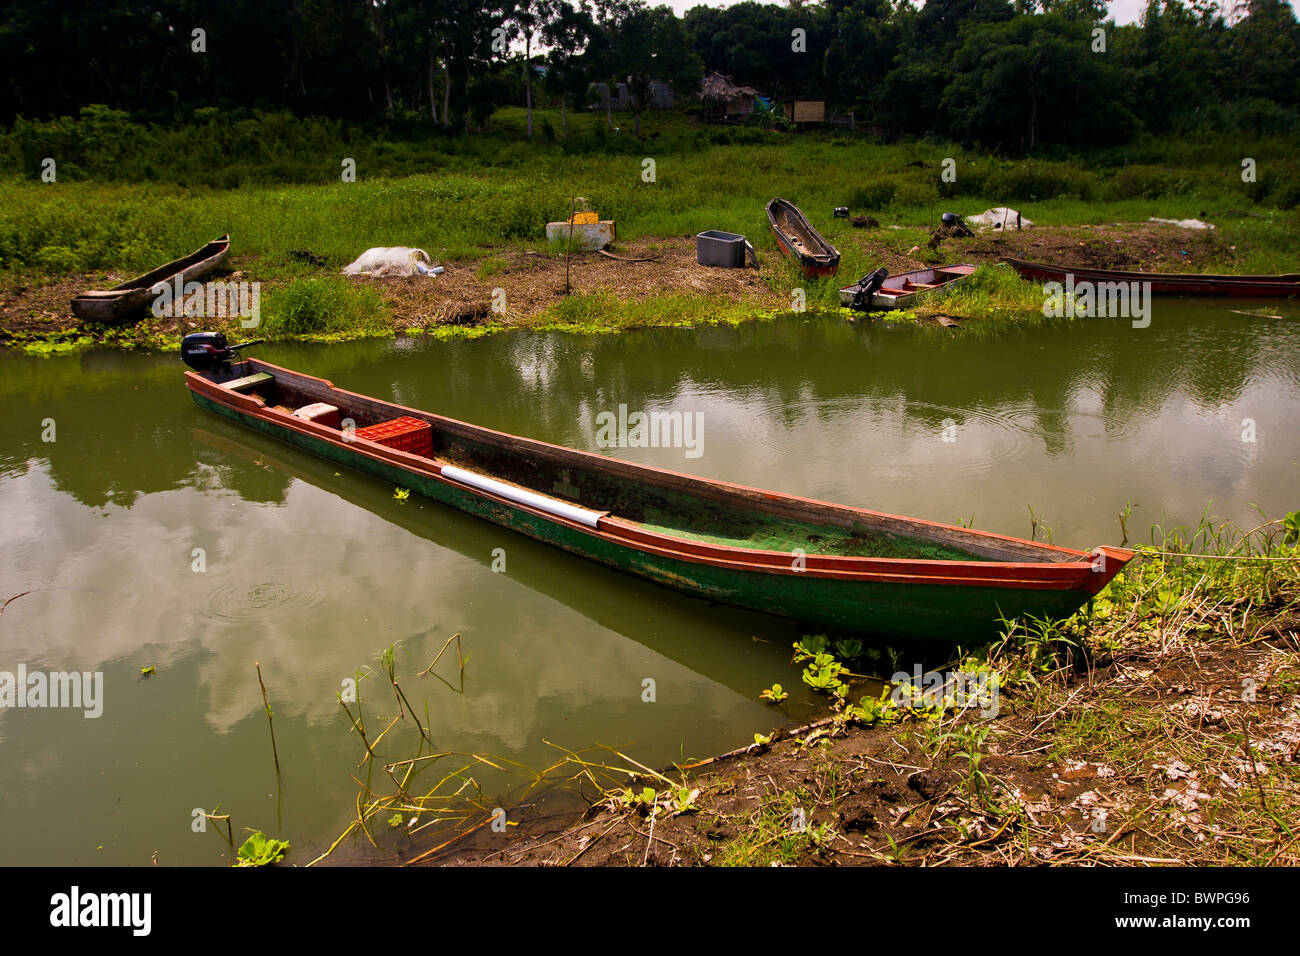 Lago Bayano, Panamá - canoa motorizada, Lago Bayano, la Comarca Kuna de Madungandi territorio indígena. Foto de stock